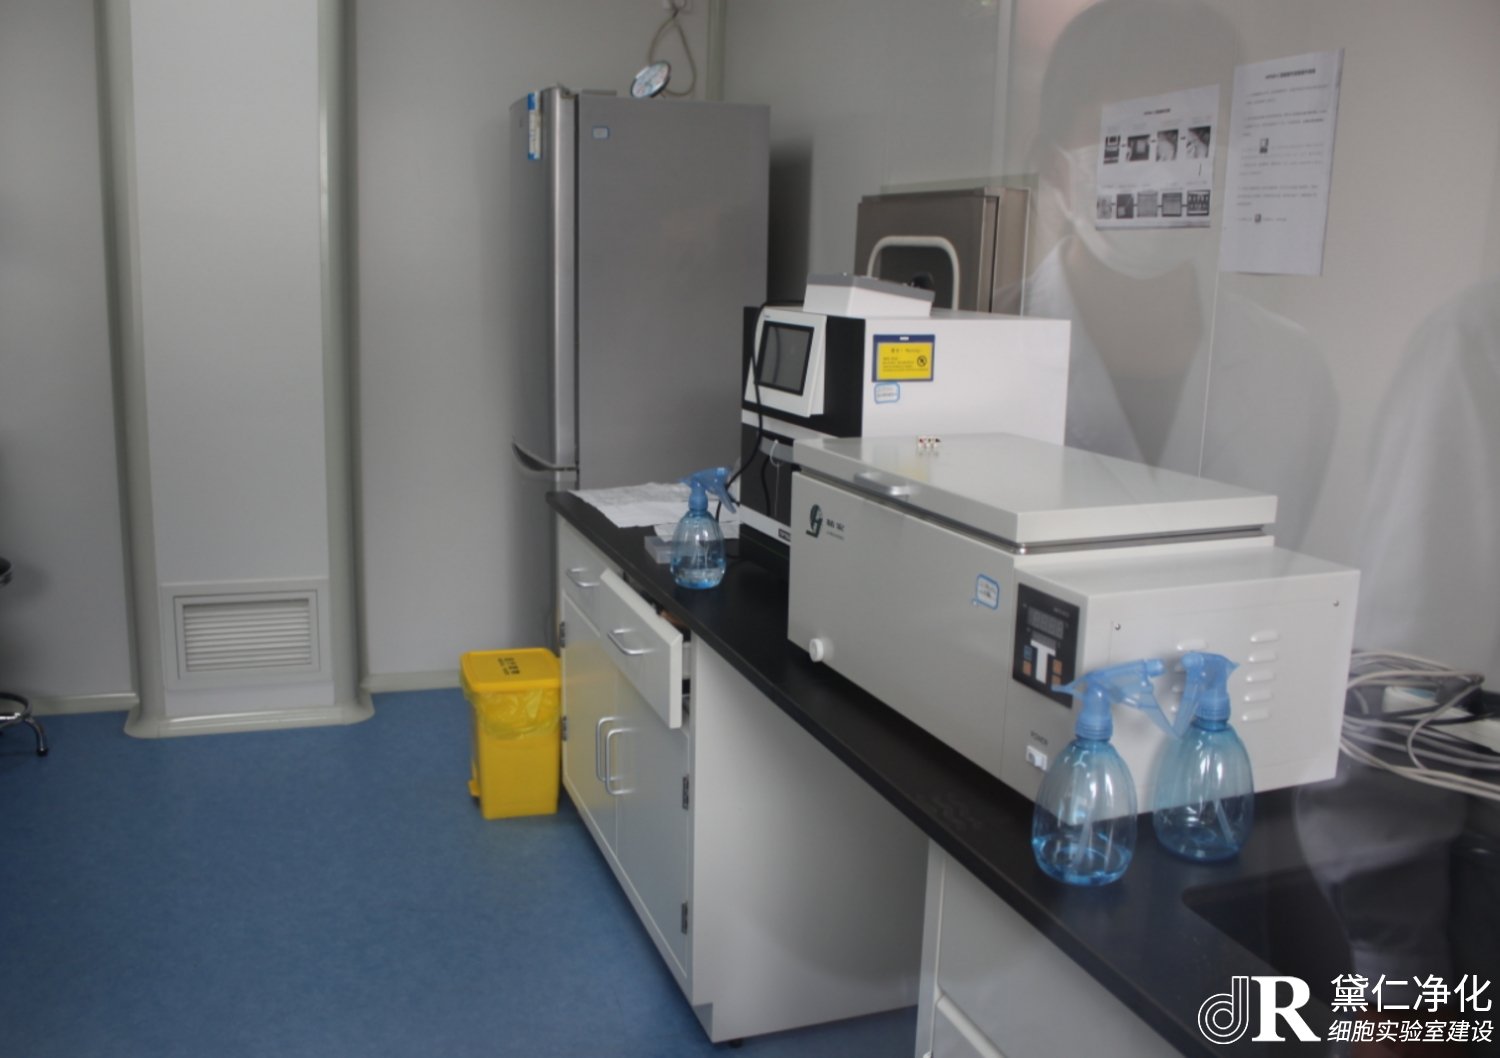 细胞实验室仪器、设施、器具的使用